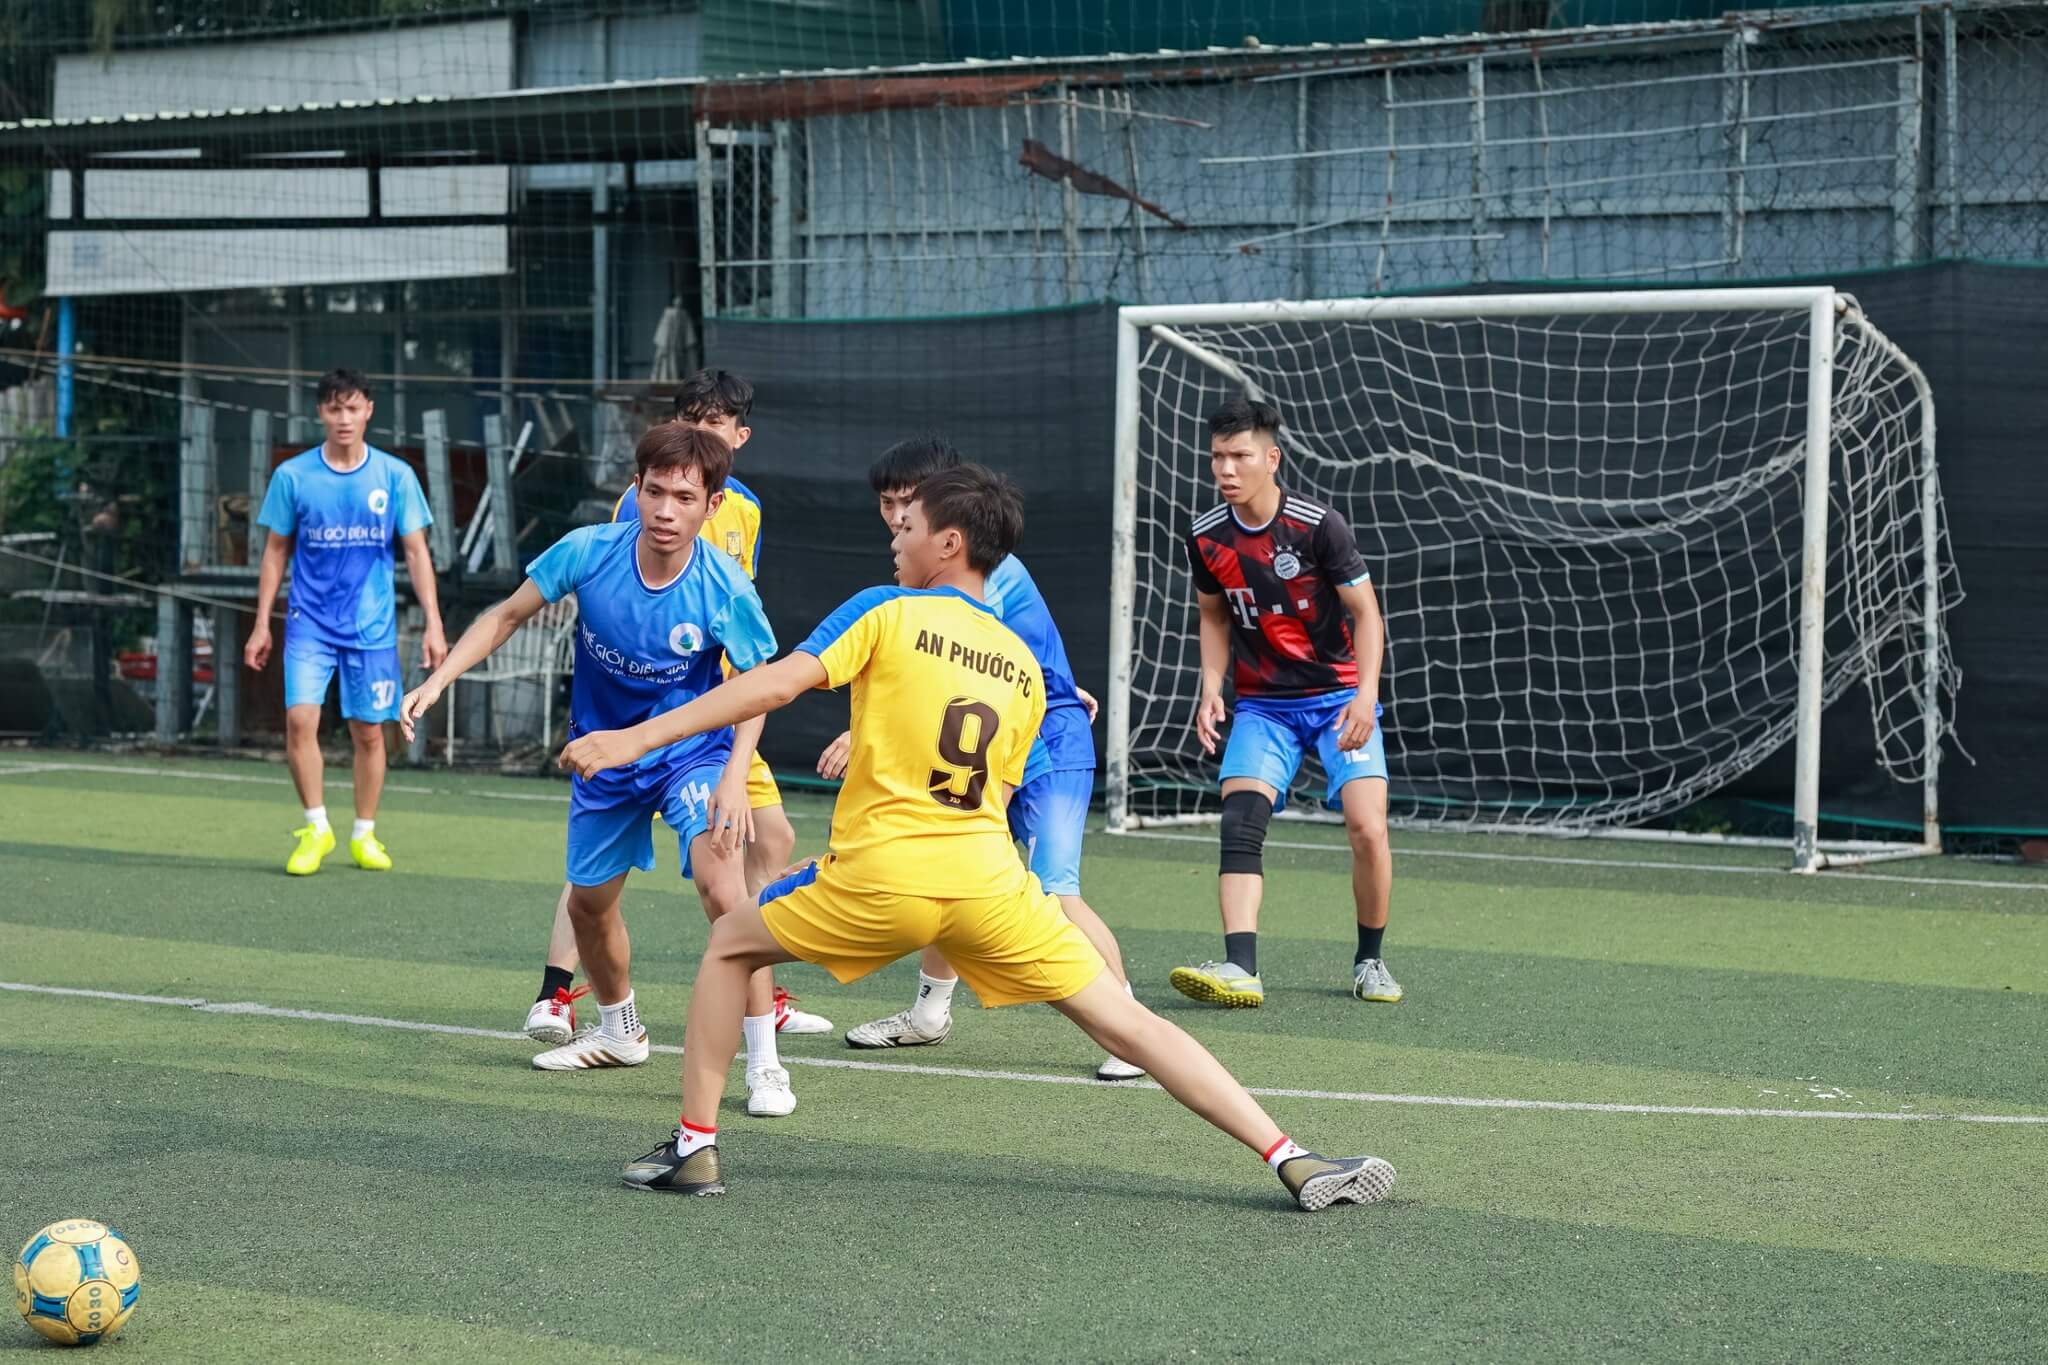 Thế Giới Điện Giải tham gia giải bóng đá VPBC CUP 2023